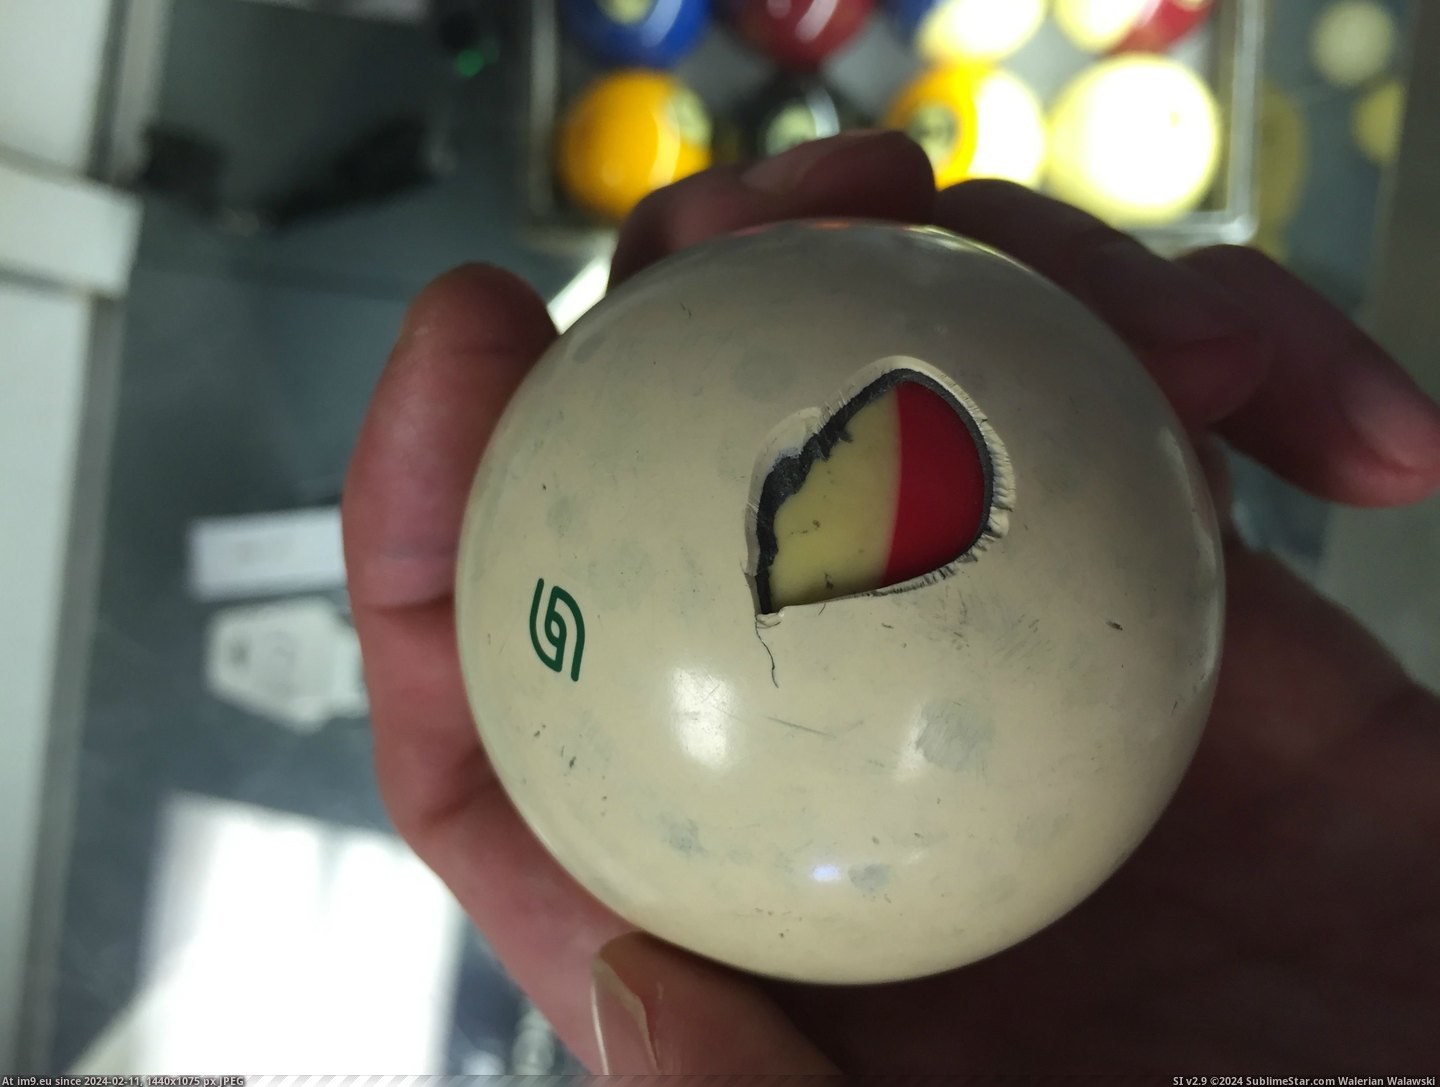 #Ball #Cracked #Reveals #Hidden [Mildlyinteresting] Cracked cue ball reveals another ball hidden inside Pic. (Obraz z album My r/MILDLYINTERESTING favs))